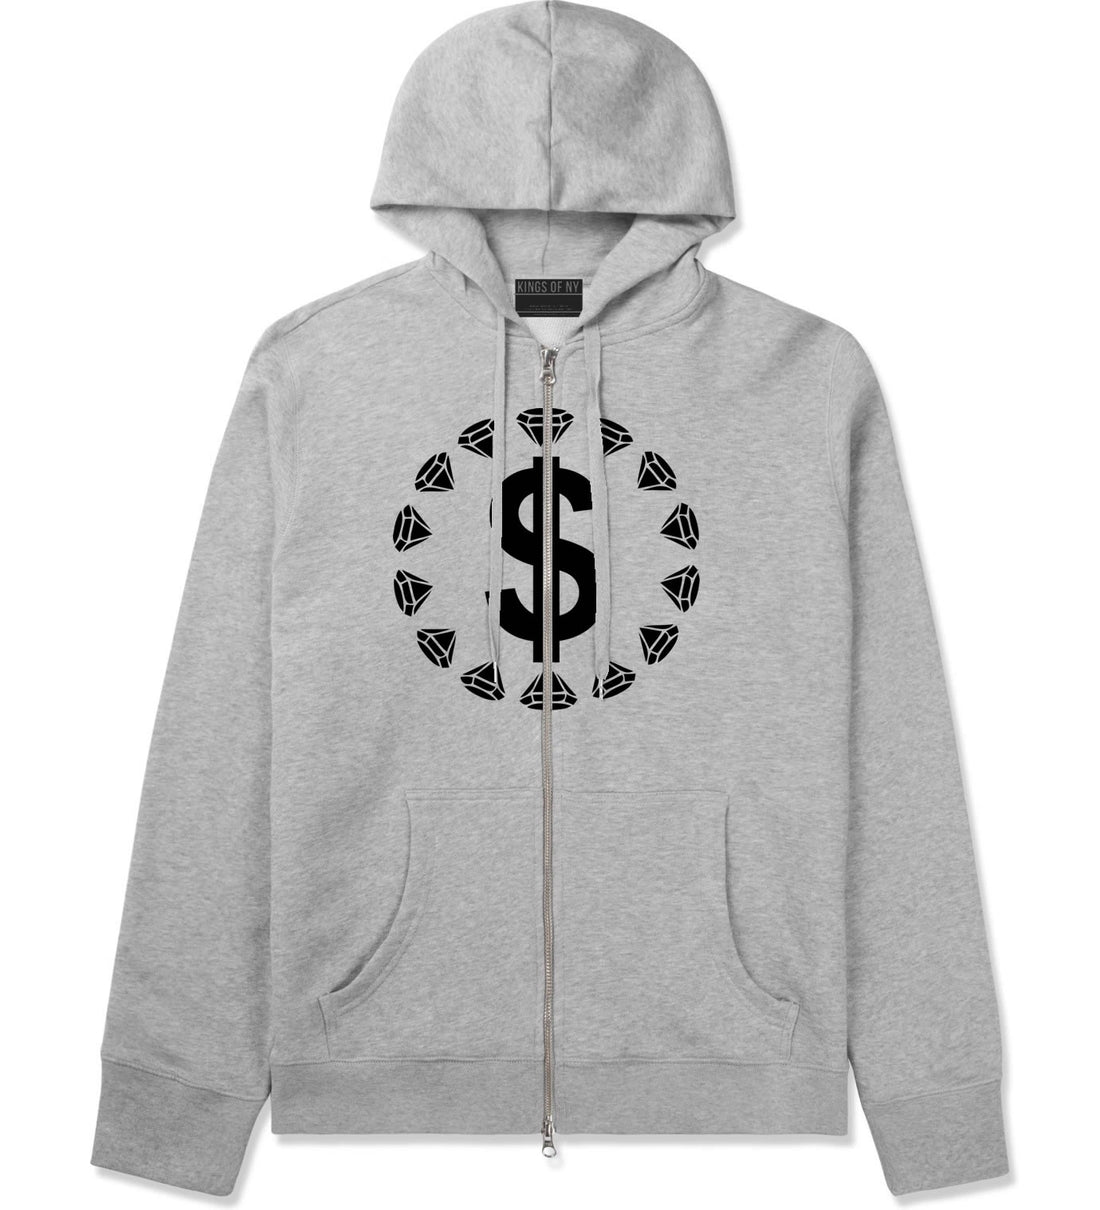 Diamonds Money Sign Logo Zip Up Hoodie Hoody in Grey by Kings Of NY